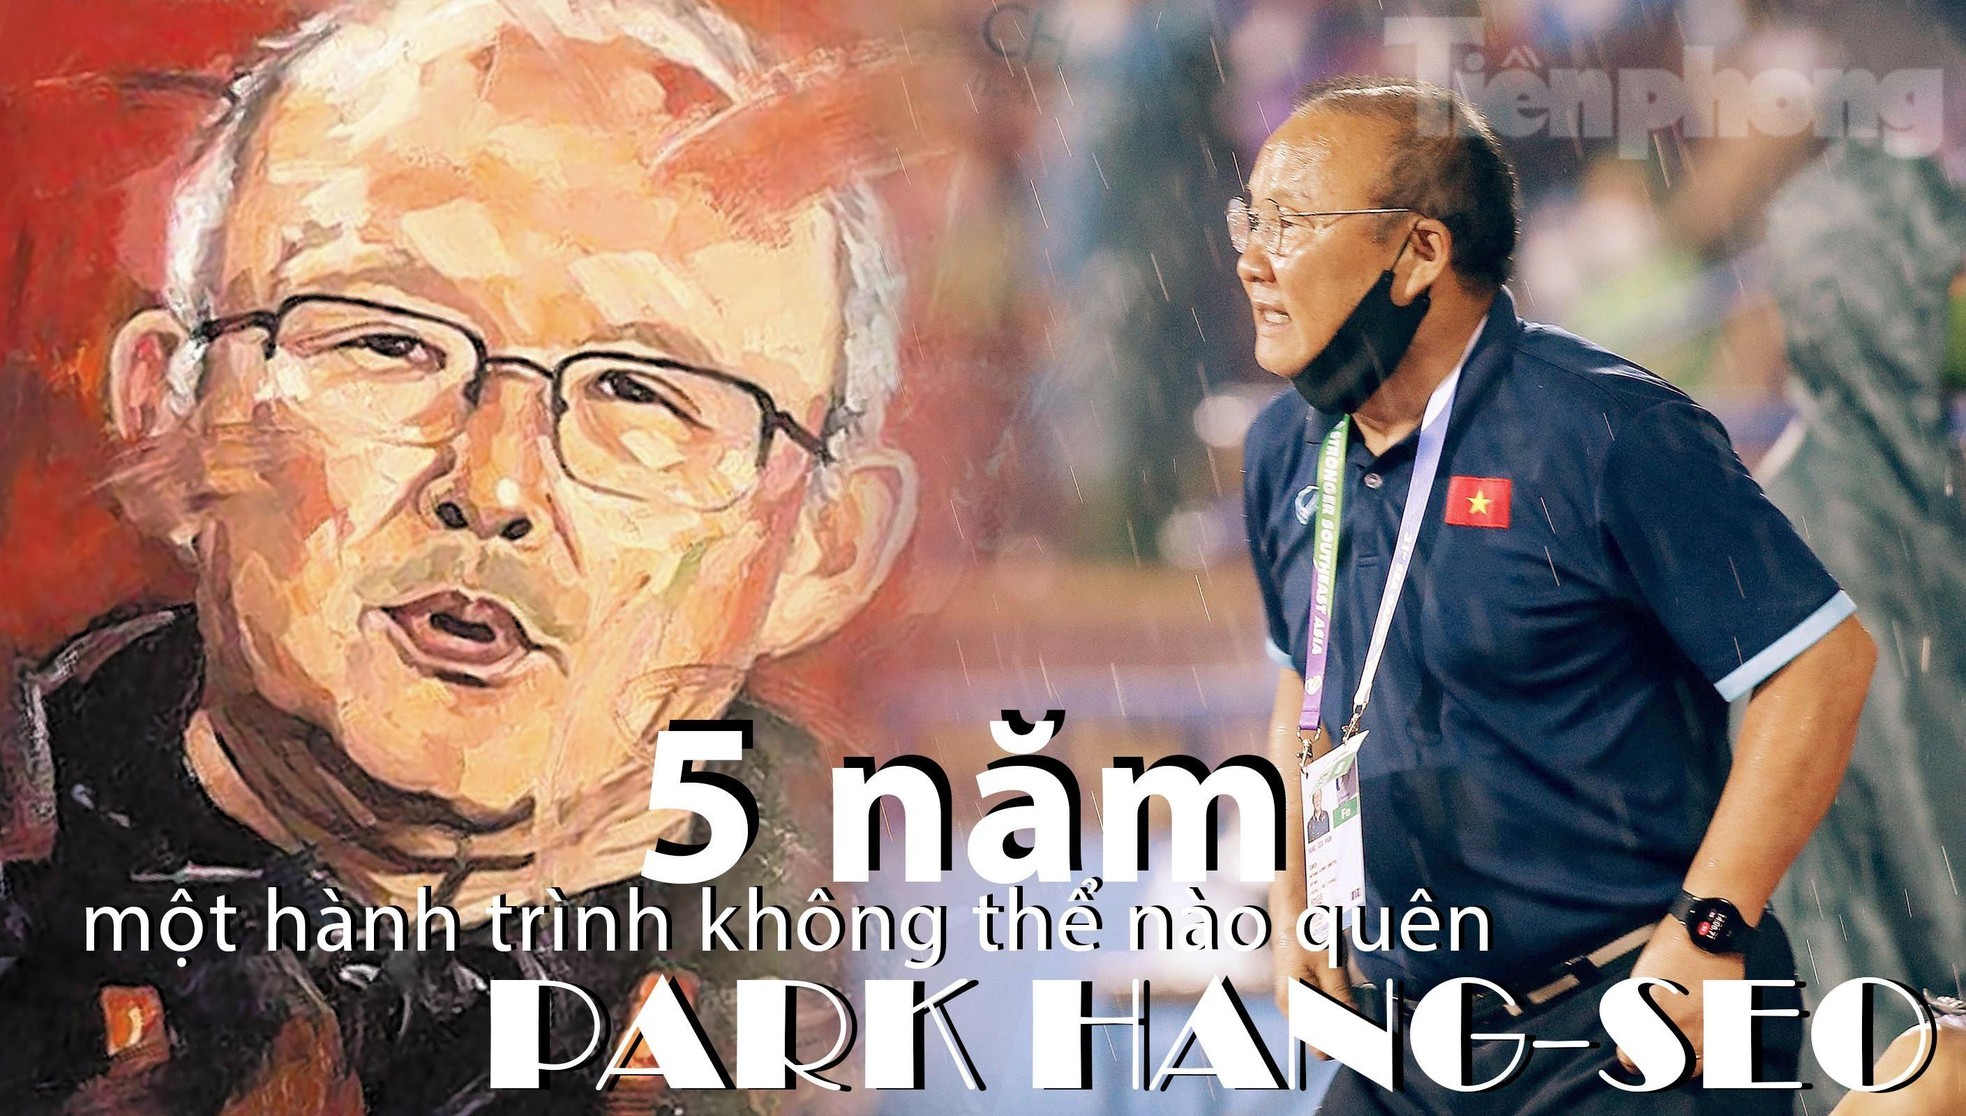 Một lần nữa cảm ơn ông, HLV Park Hang-seo, vì hành trình tuyệt vời cùng nhau - Ảnh 1.